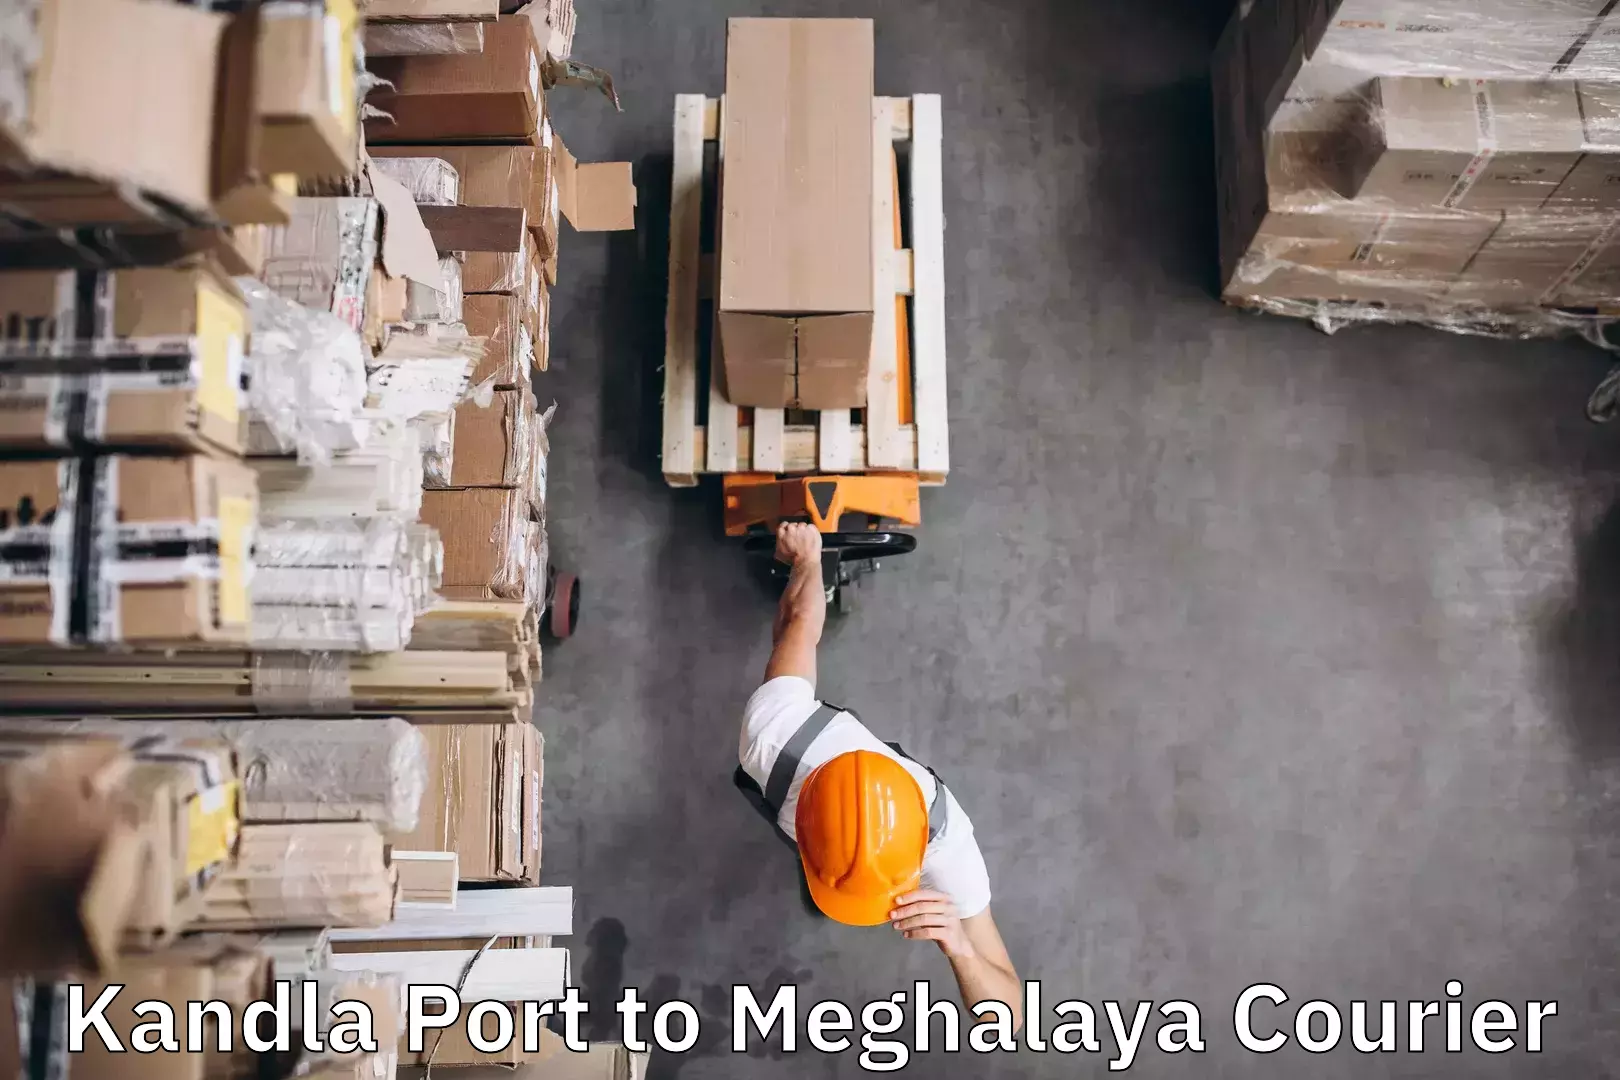 Baggage delivery solutions Kandla Port to Meghalaya